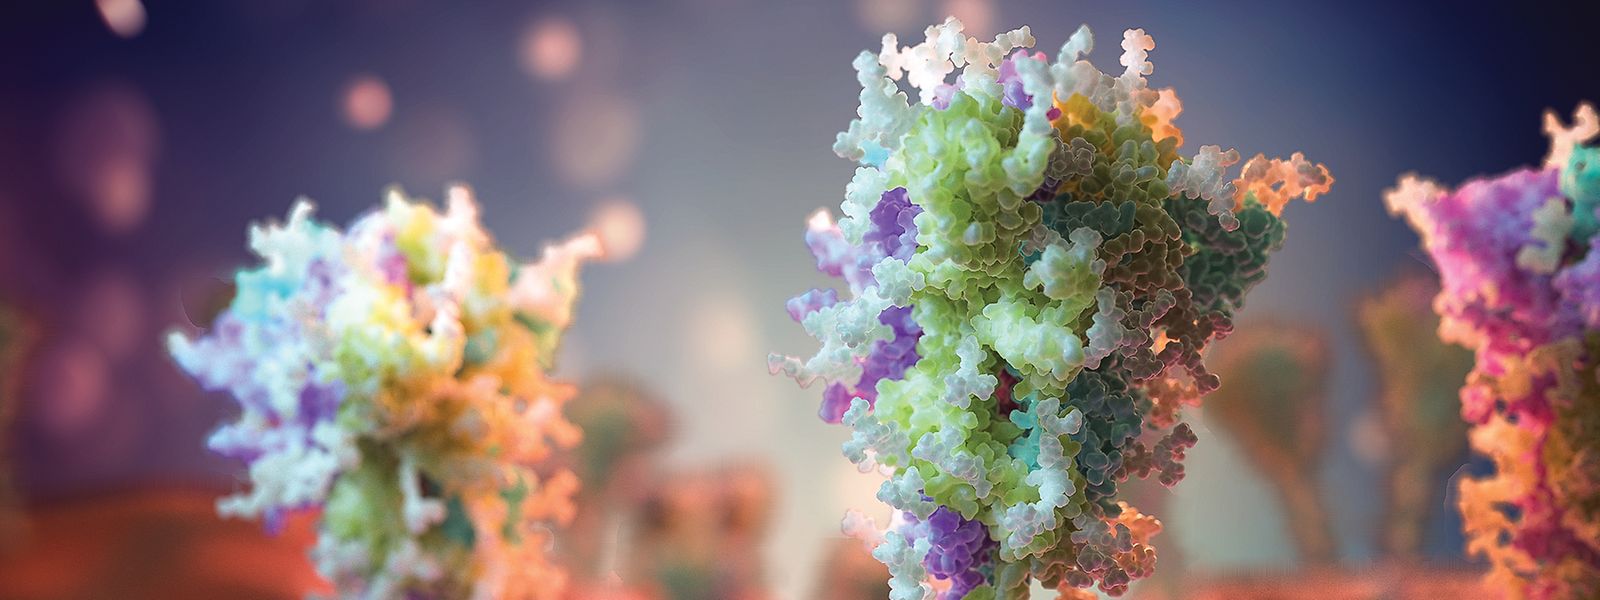 Merveilleux spectacle de cellules en mode résistance face au virus, image captée par l'université de Southampton.